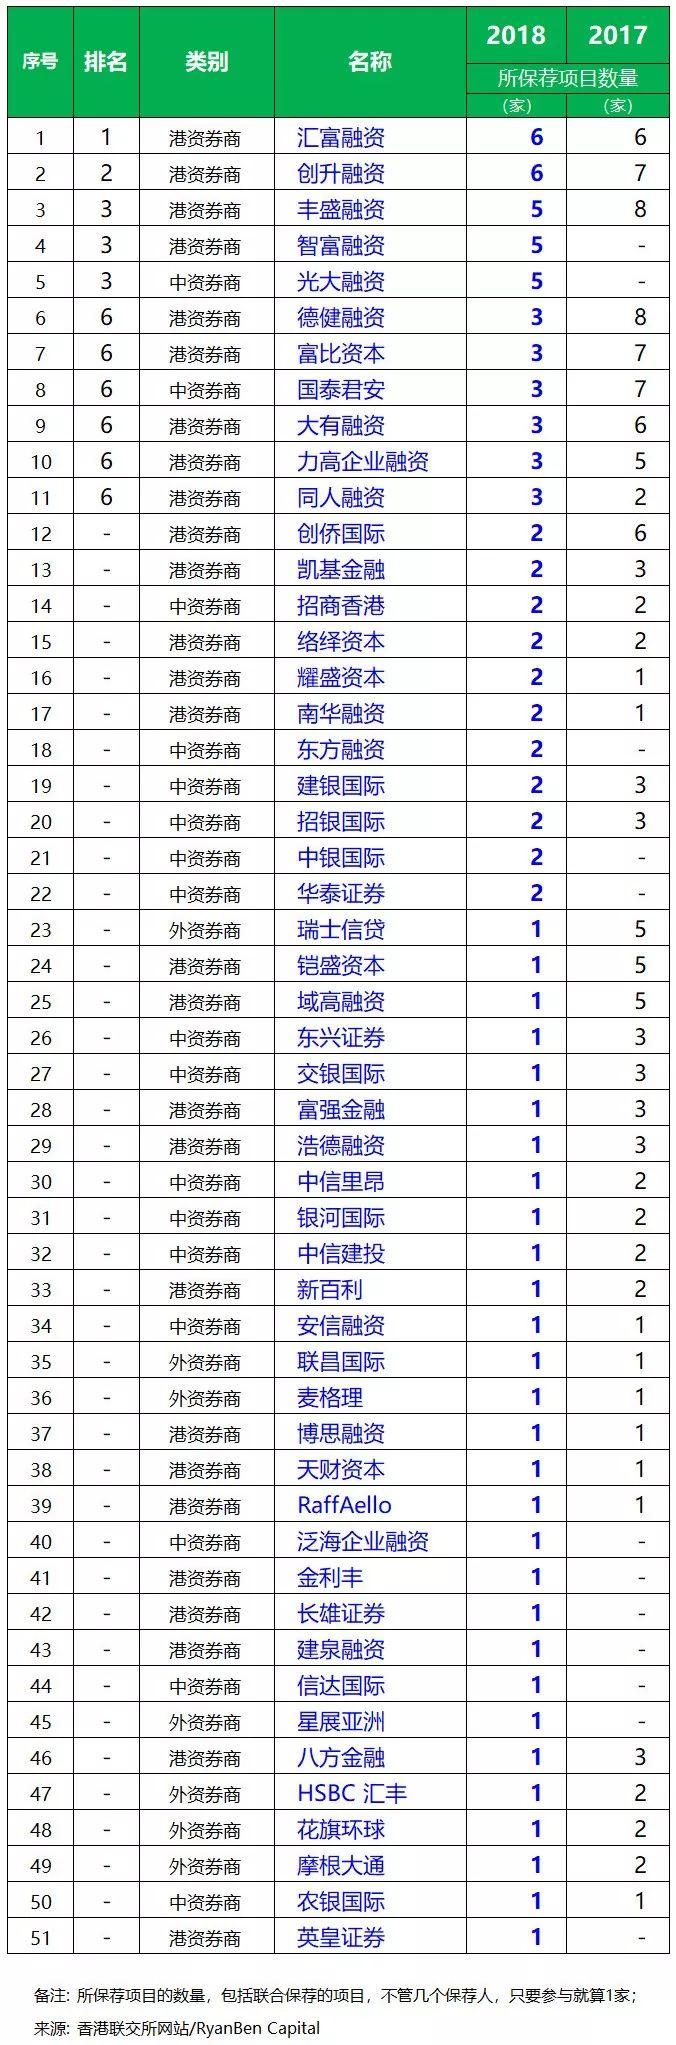 香港IPO上市中介团队排行榜(2018年1-5月)